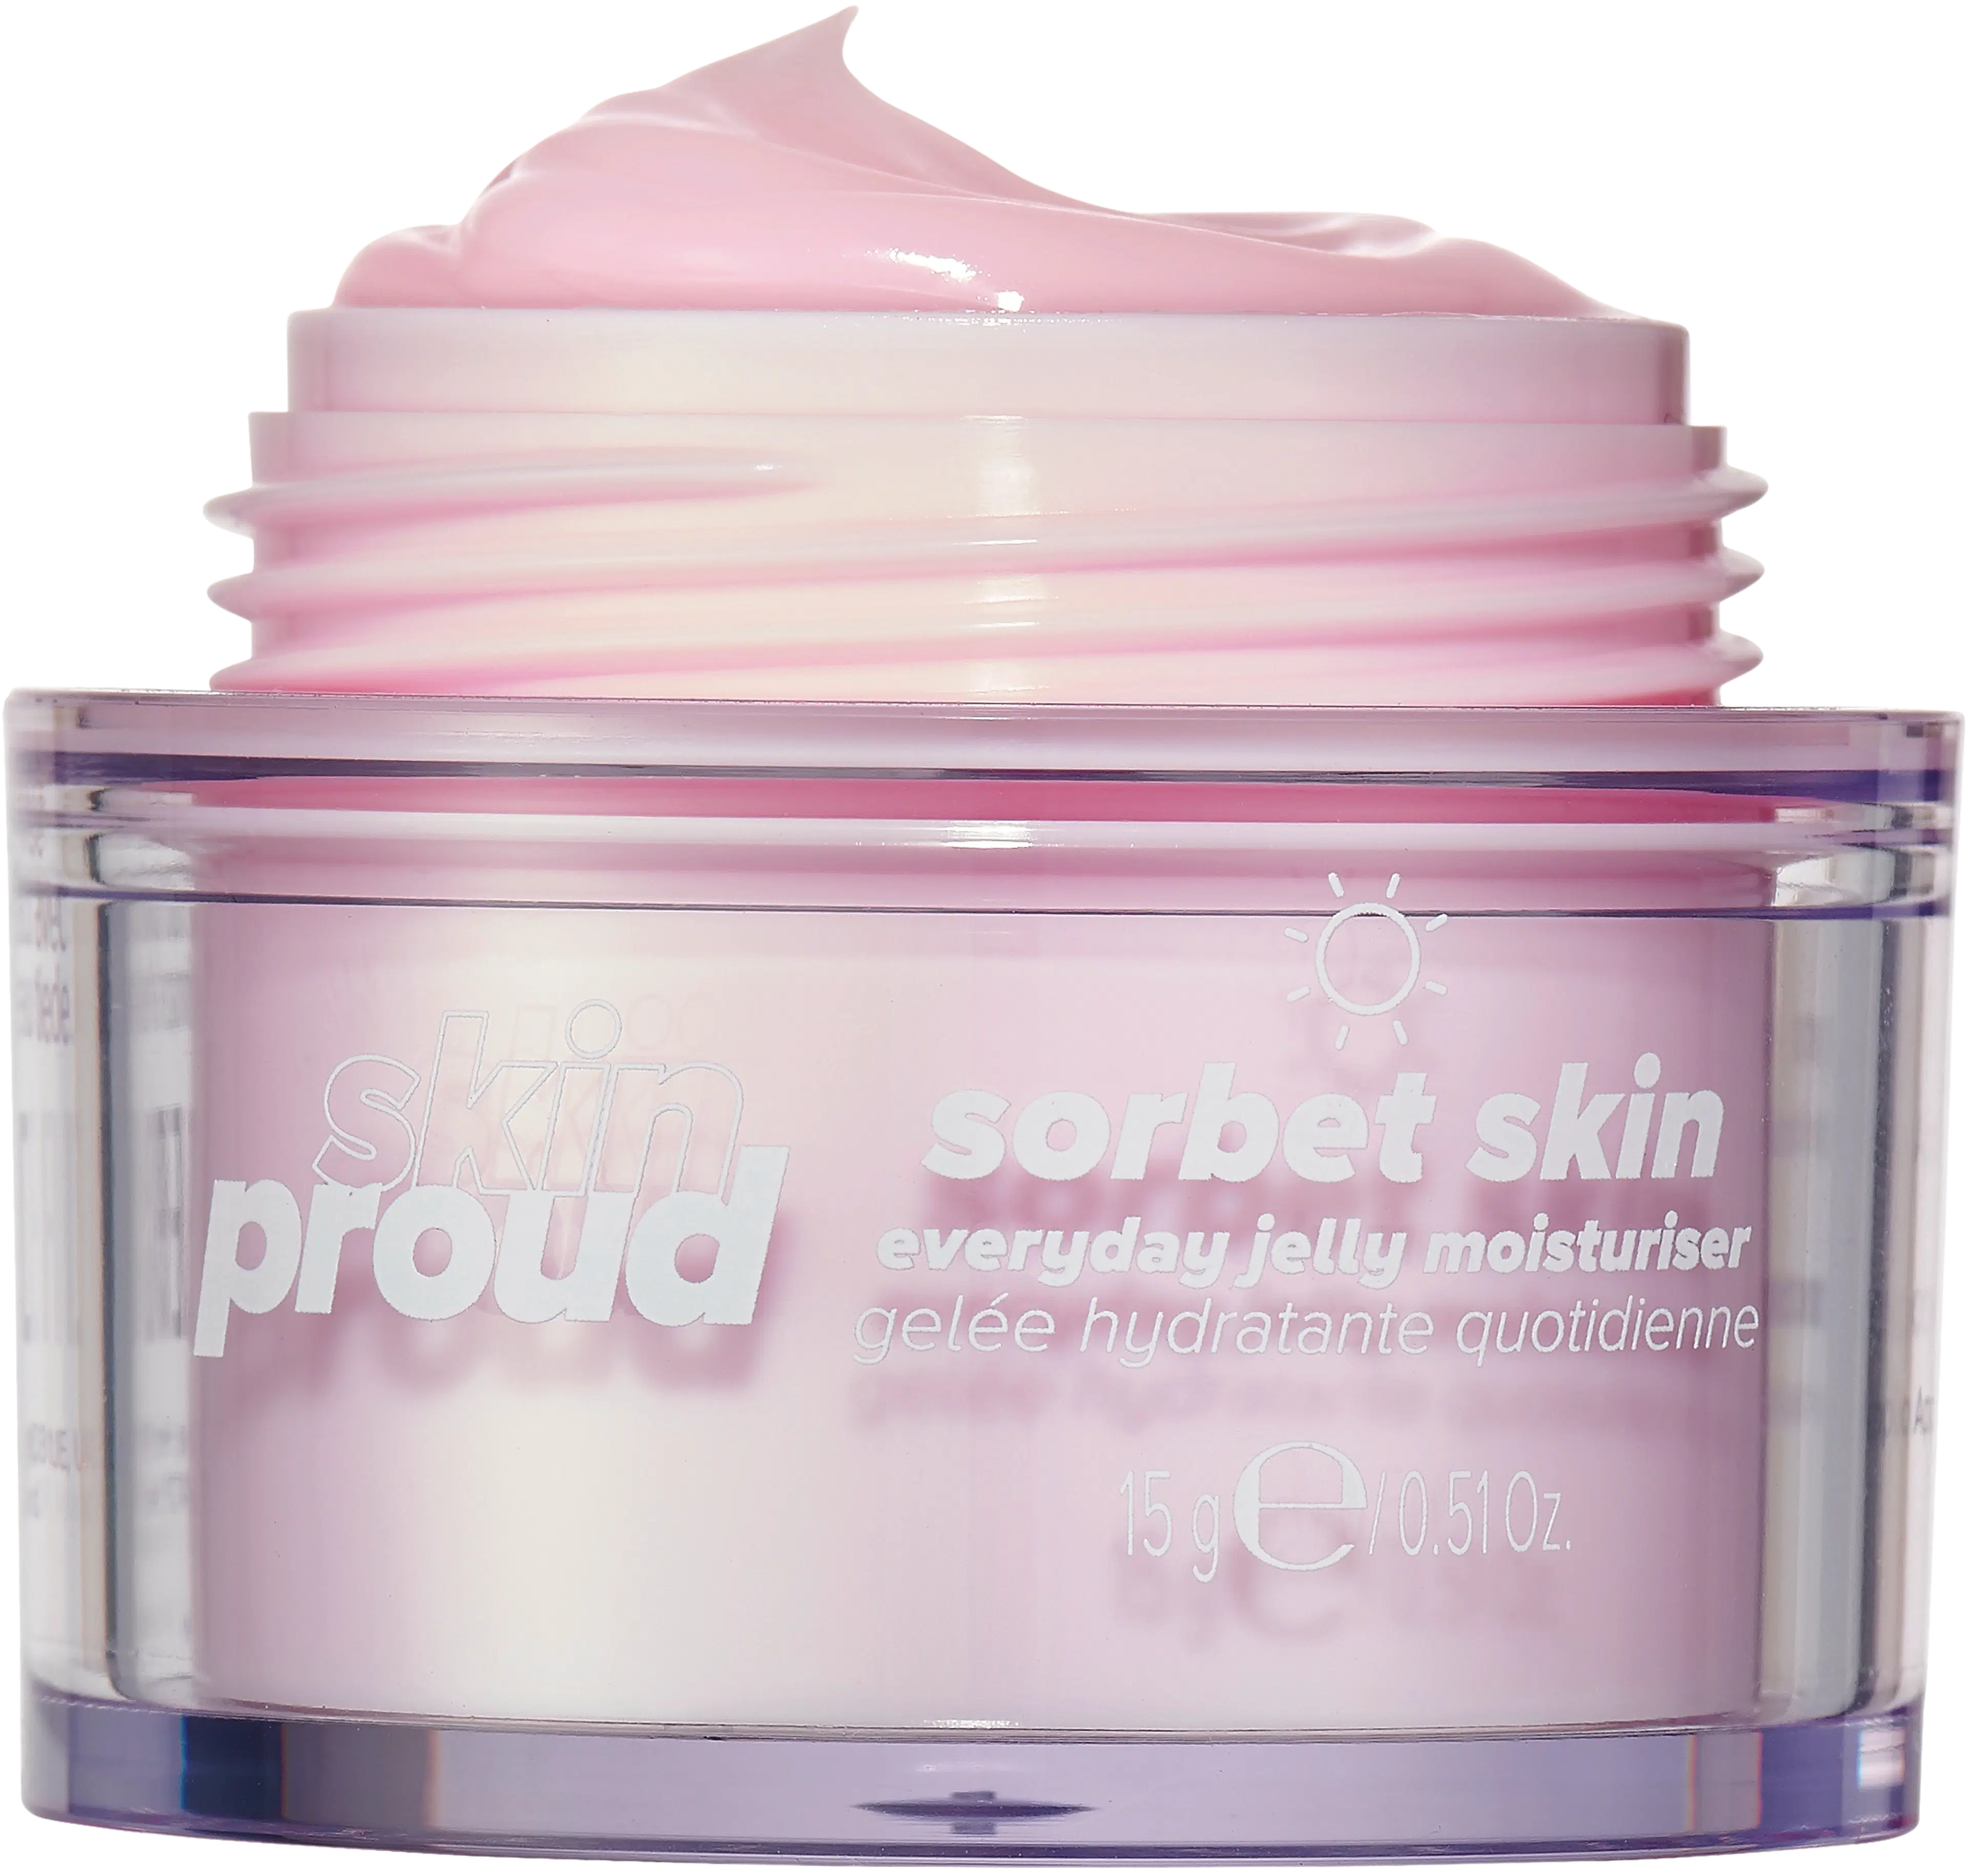 Skin Proud Sorbet Skin Everyday Jelly Moisturiser -kosteuttava geelivoide 15ml matkakoko